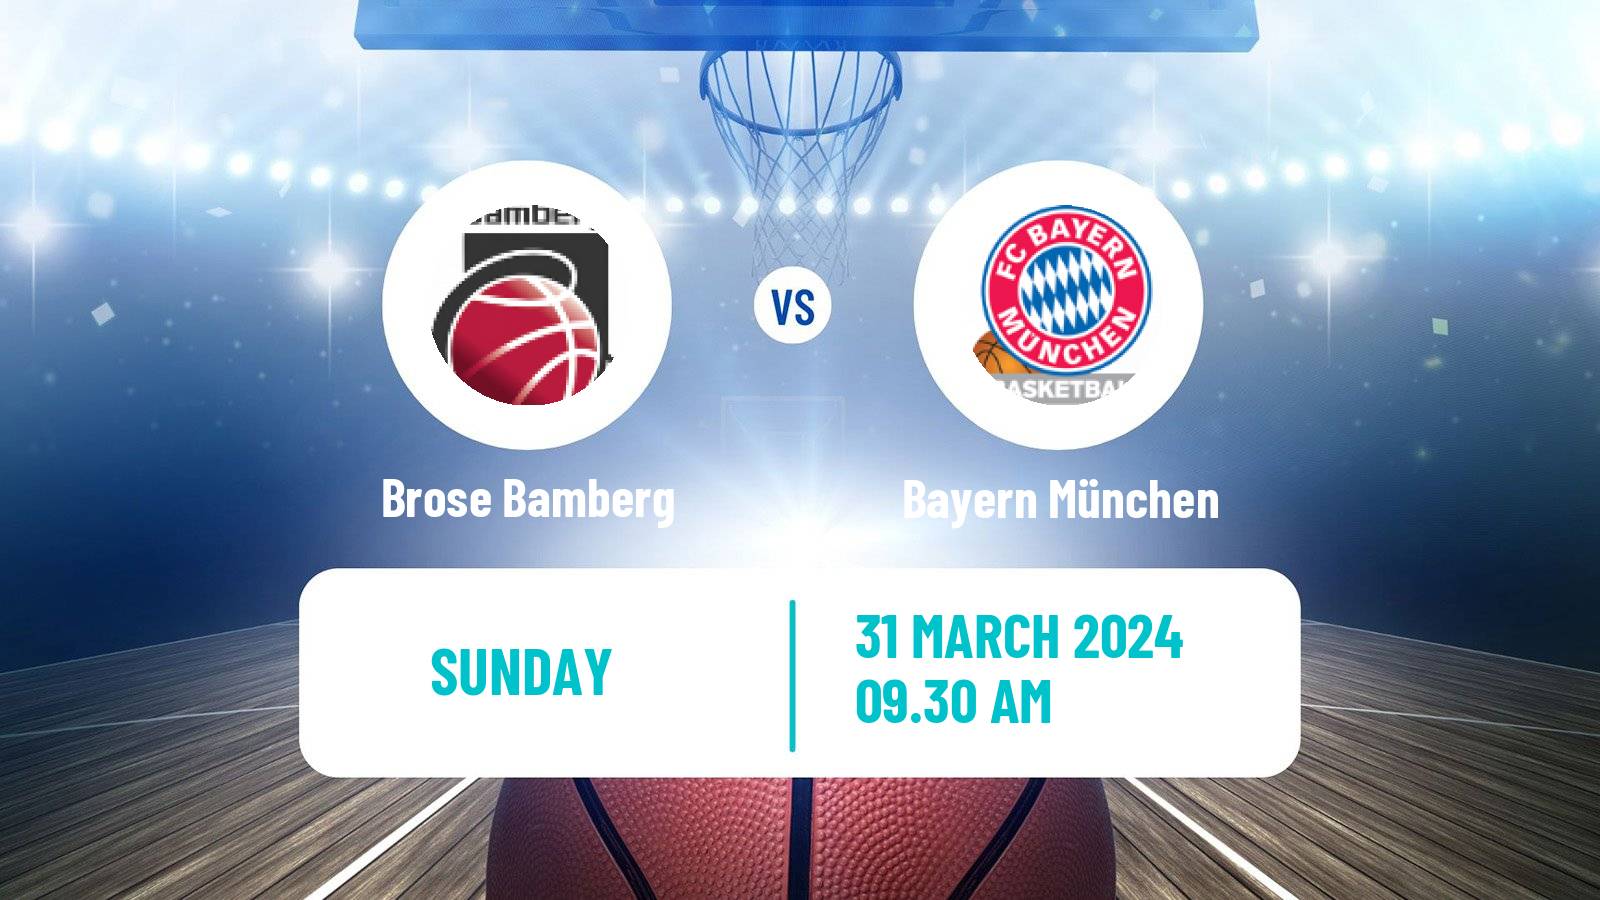 Basketball German BBL Brose Bamberg - Bayern München